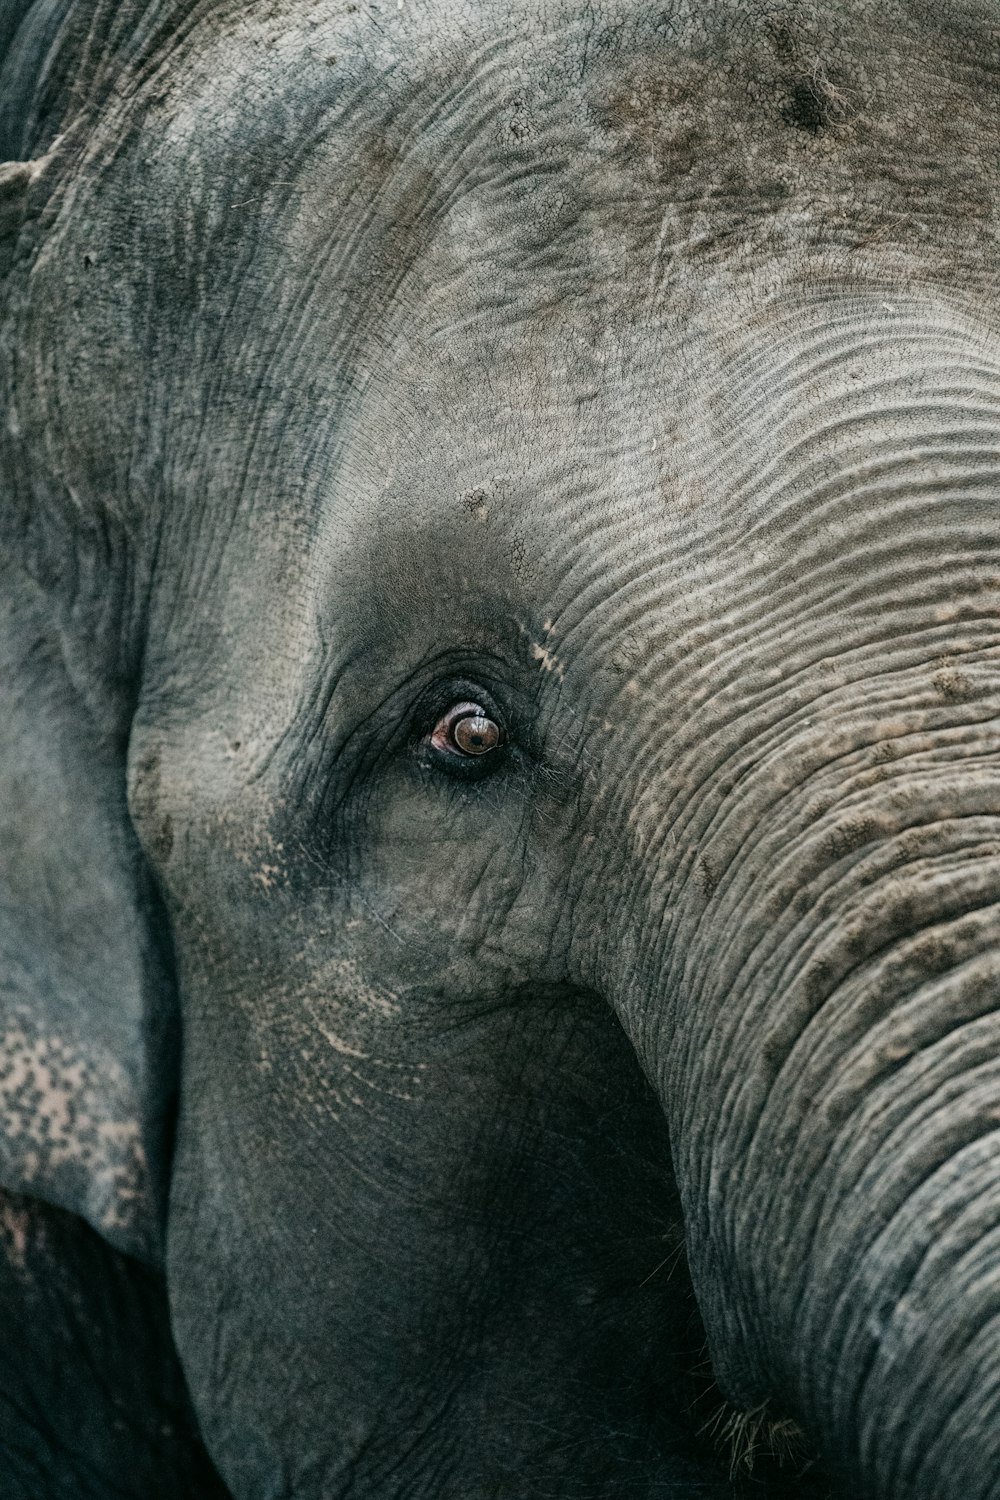 close up photo of elephants eye